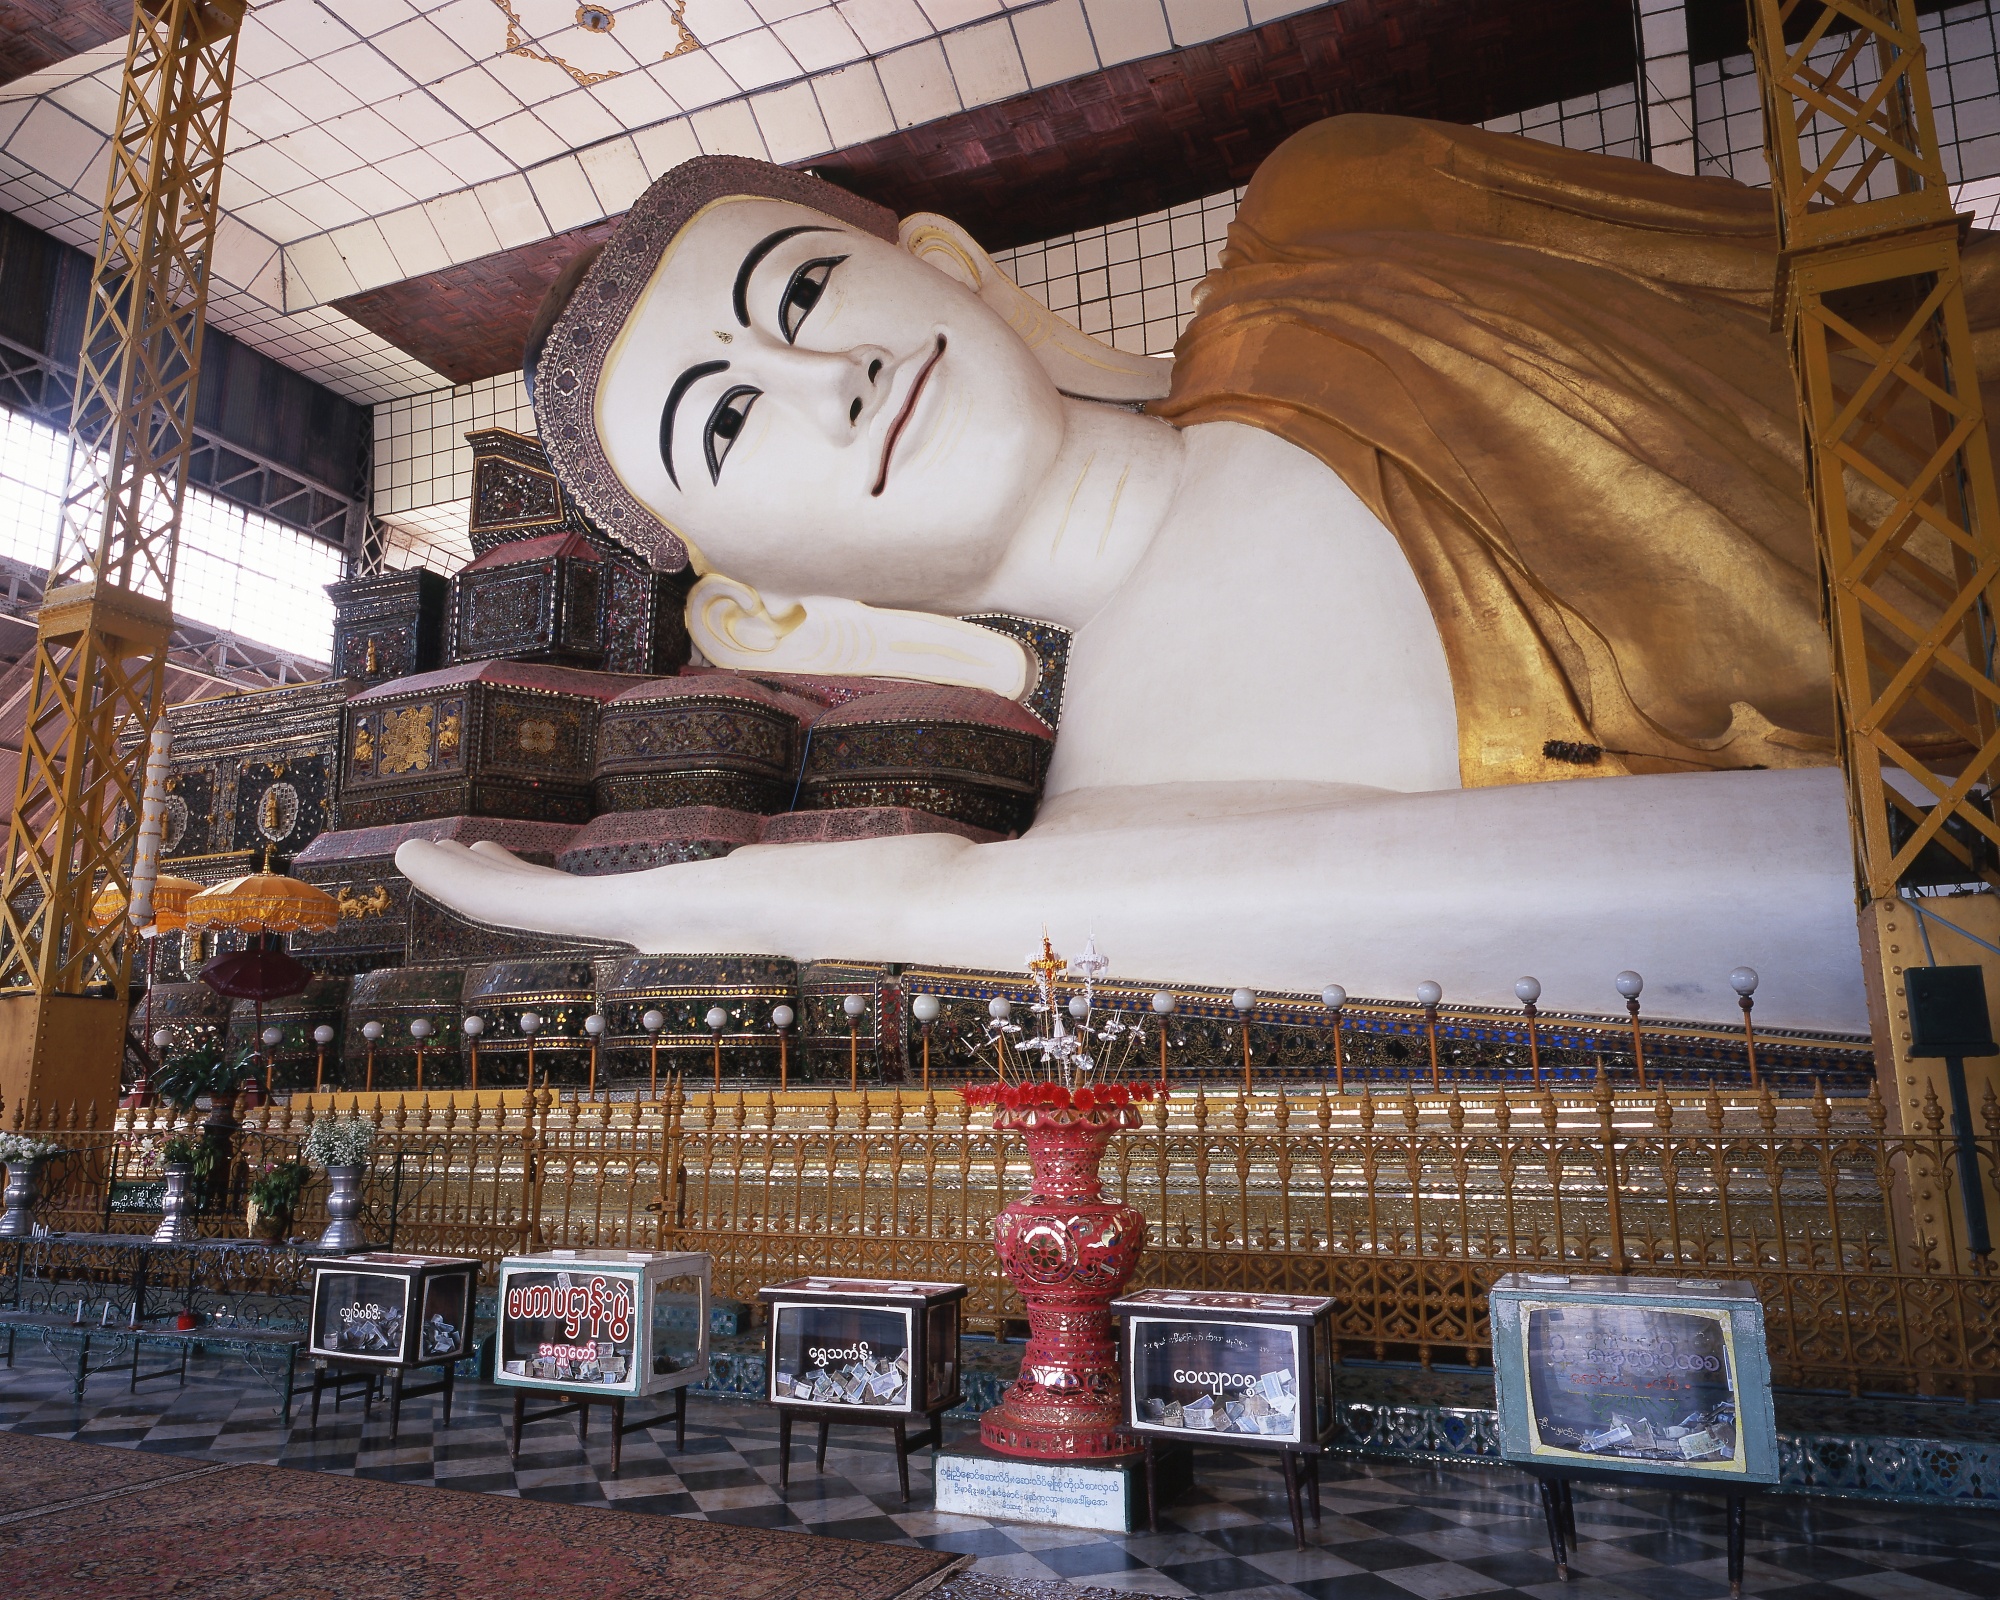 バゴーで有名な巨大寝仏像シュエターリャウン寝仏。994年にモン人によって建立され、ミャンマー最古の寝仏として知られる。